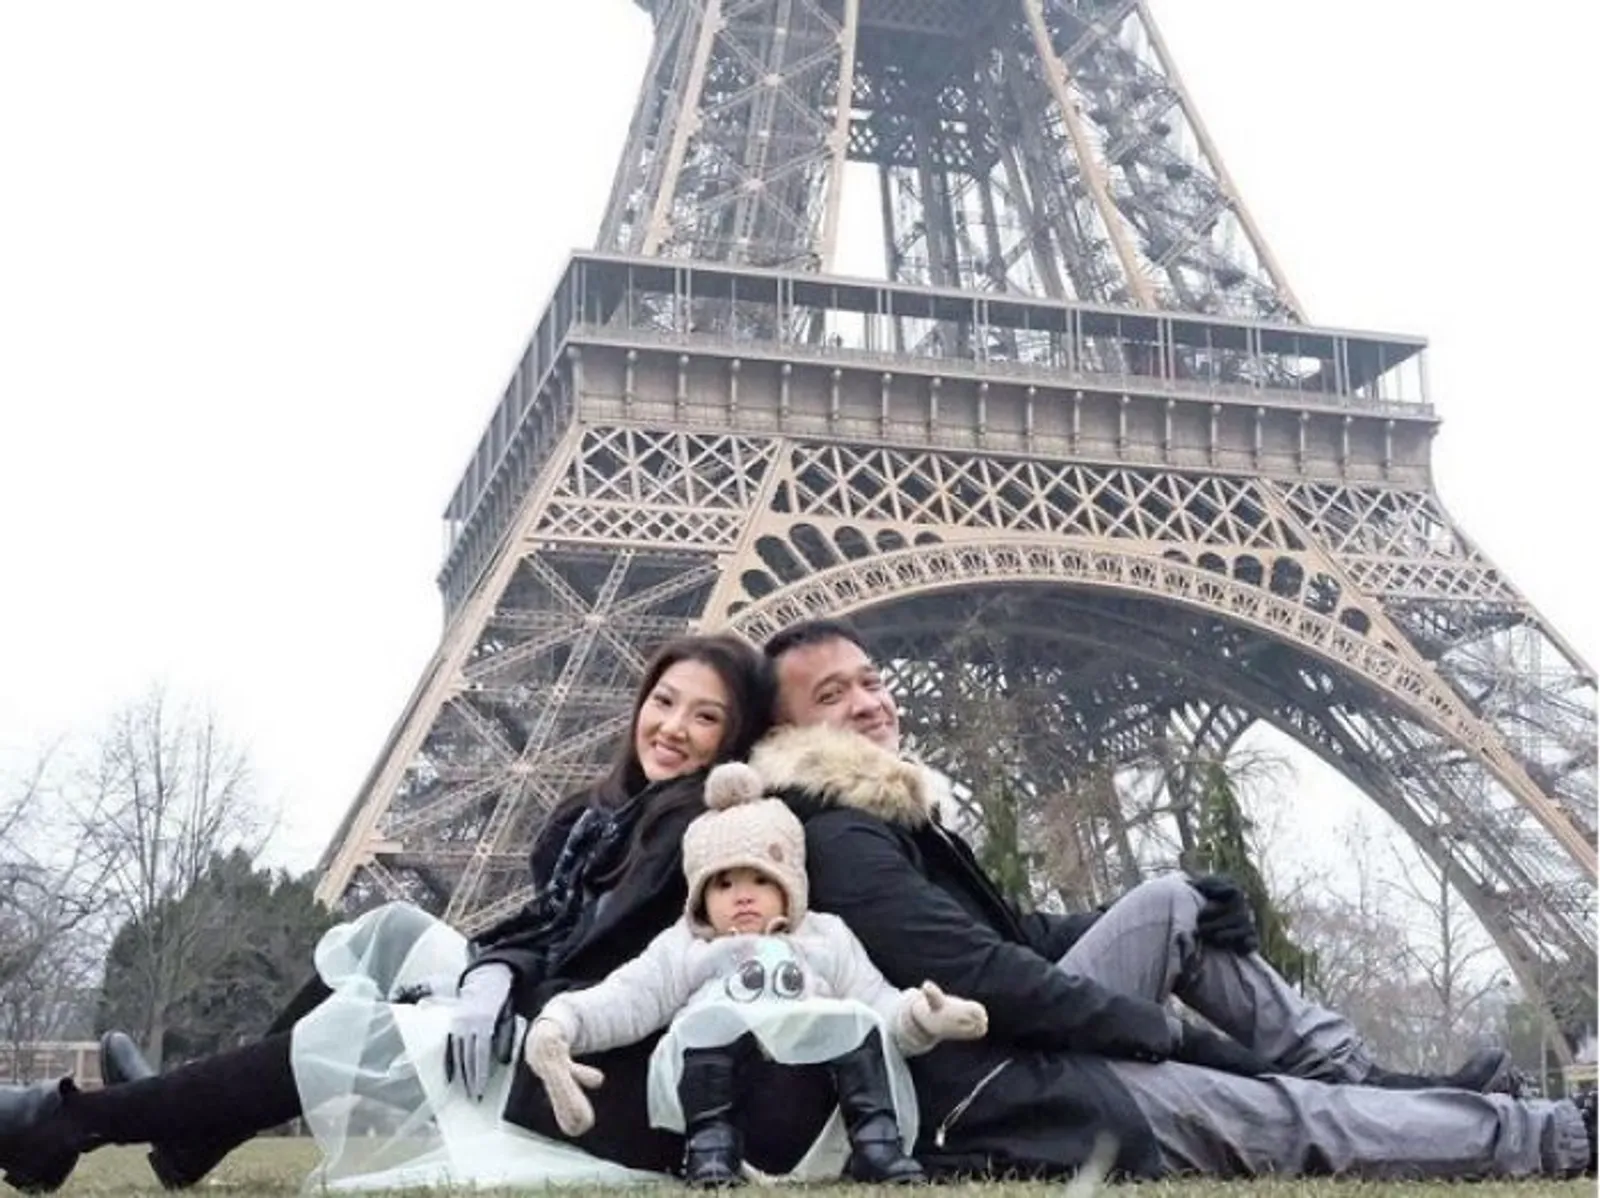 Hanya Unggah Foto, Kamu dan Keluarga Bisa Liburan Gratis ke Perancis!